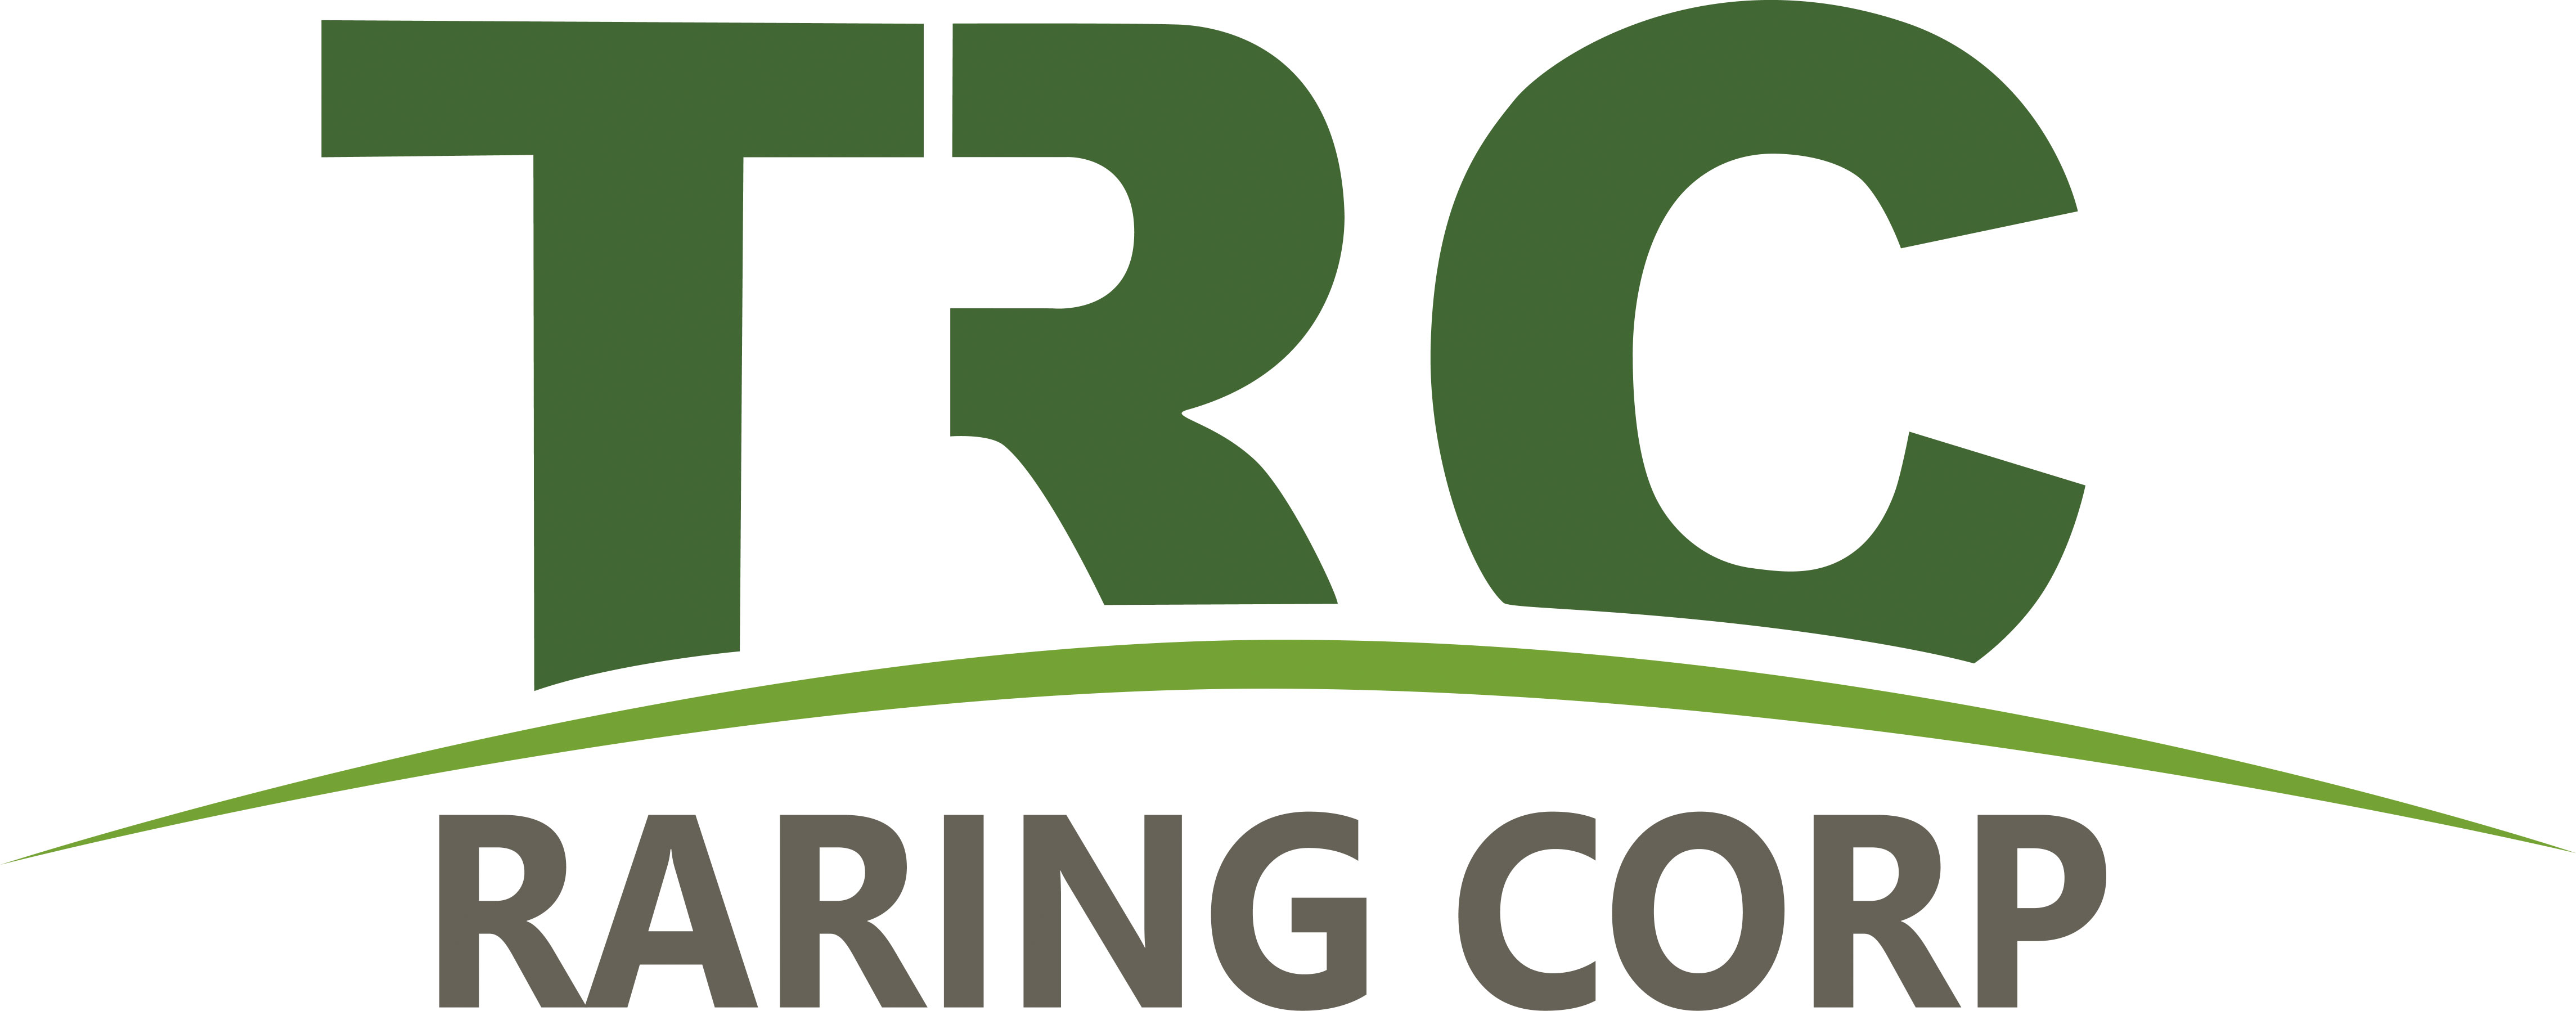 TRC - Raring Corp logo